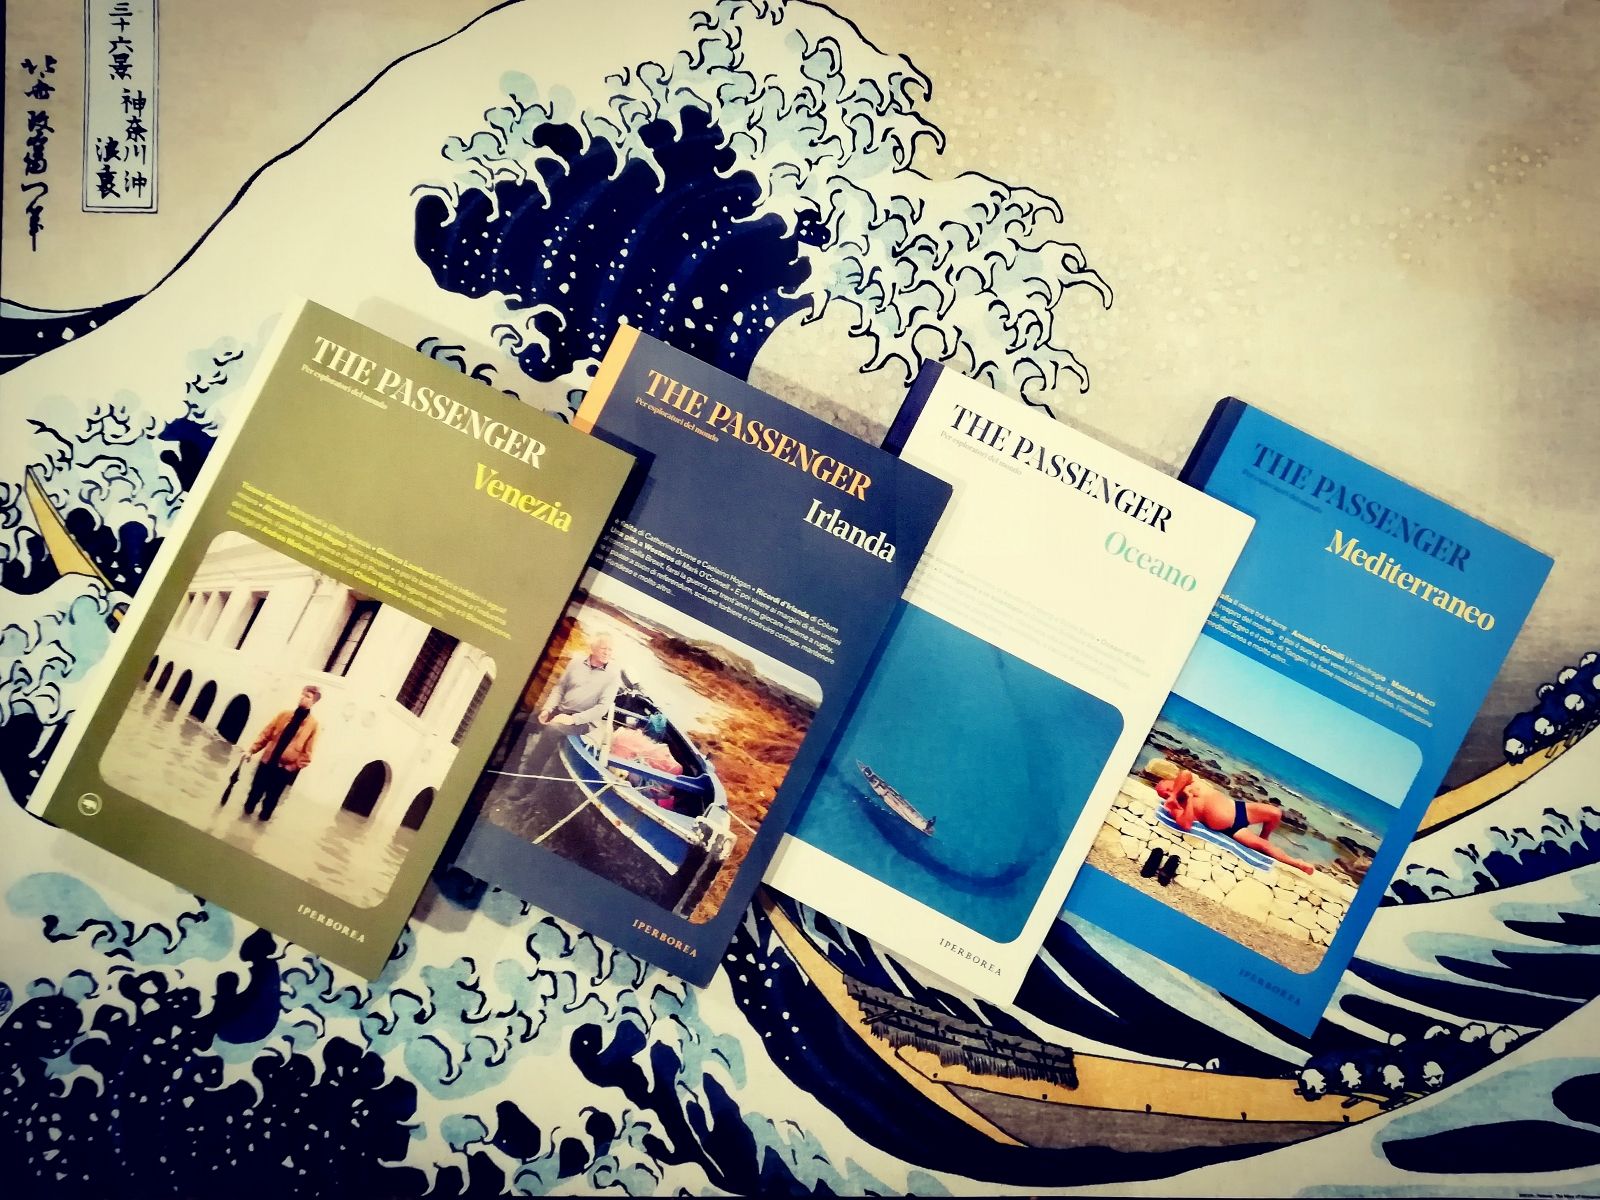 The Passenger: Venezia con gli occhi di Iperborea - Libri dal Blog del Mare